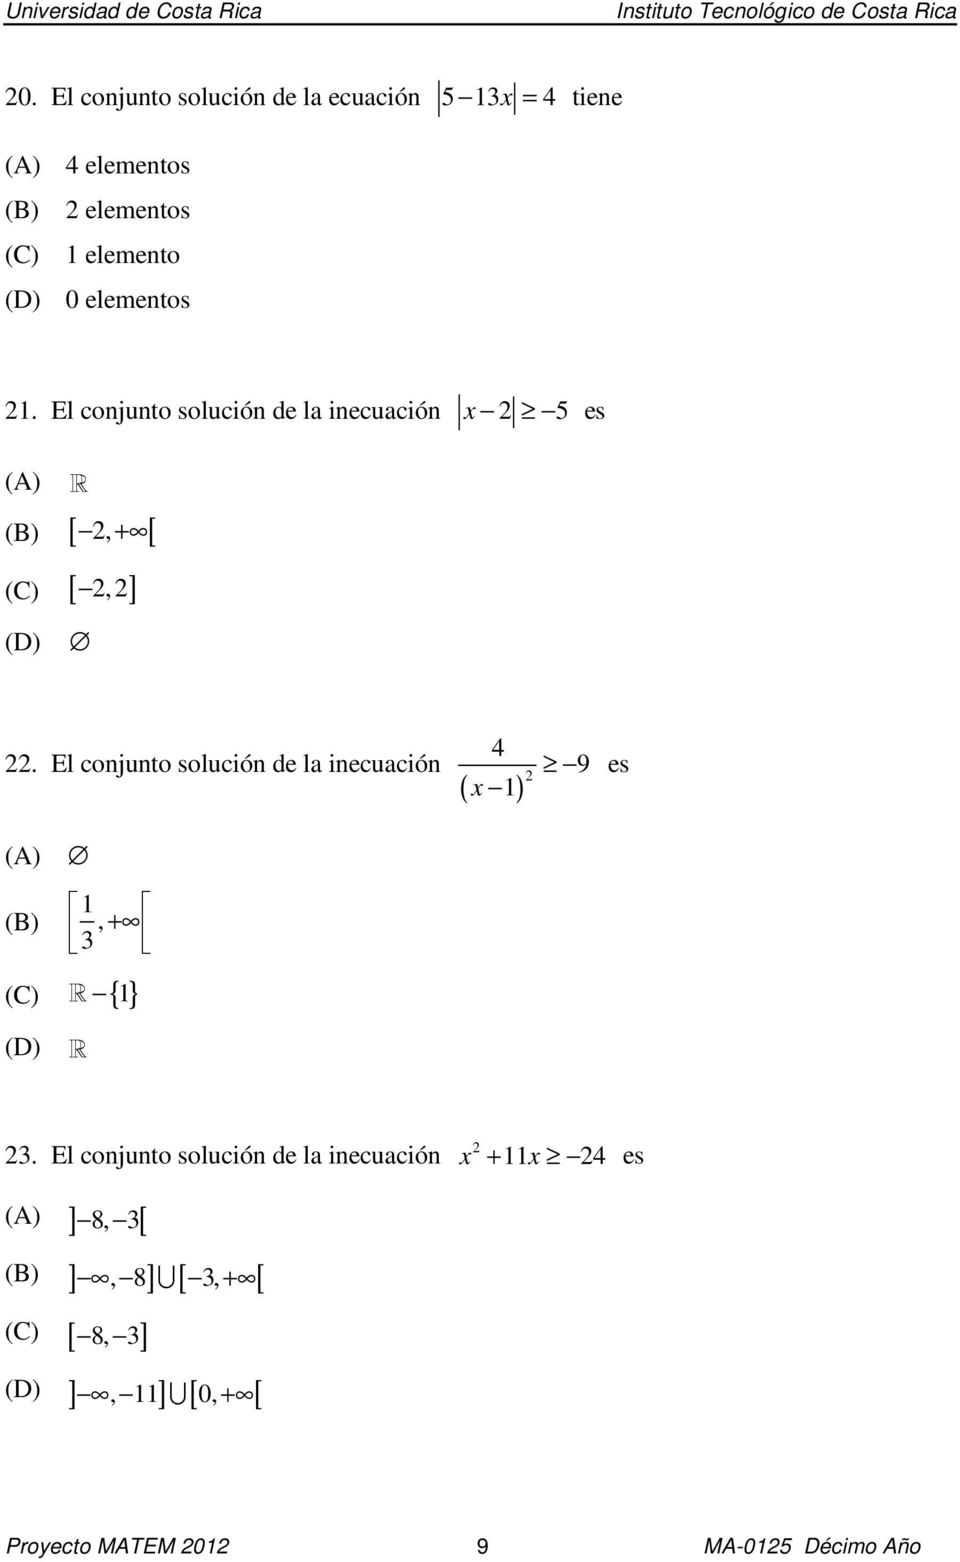 El conjunto solución de la inecuación ( ) x 1 9 es 1 (B), + 3 (C) R { 1} R 3.